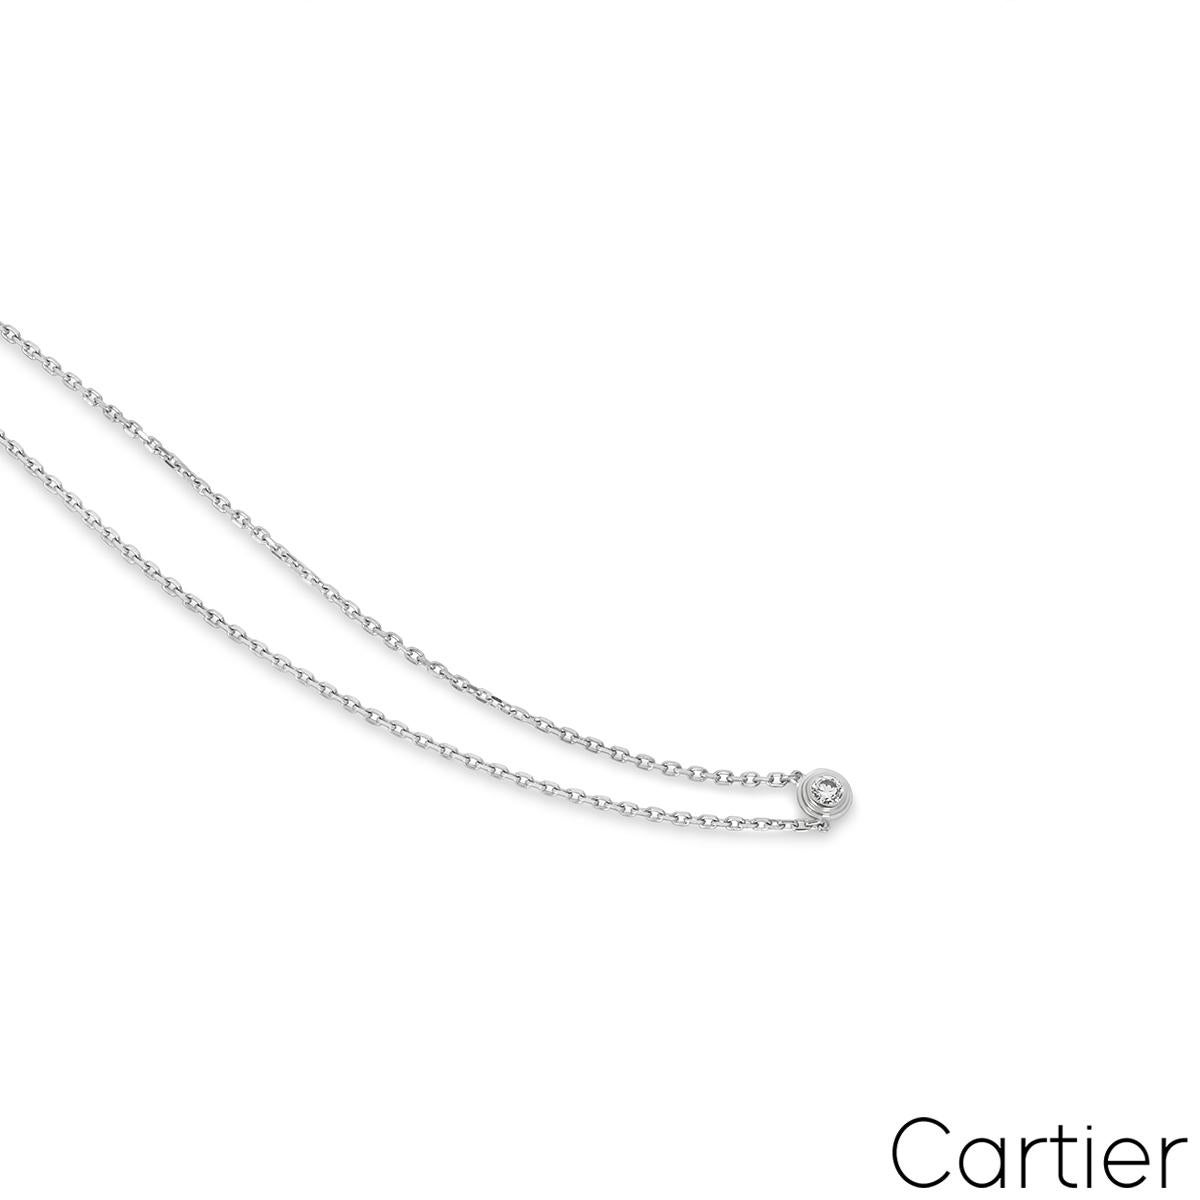 cartier d'amour necklace size comparison